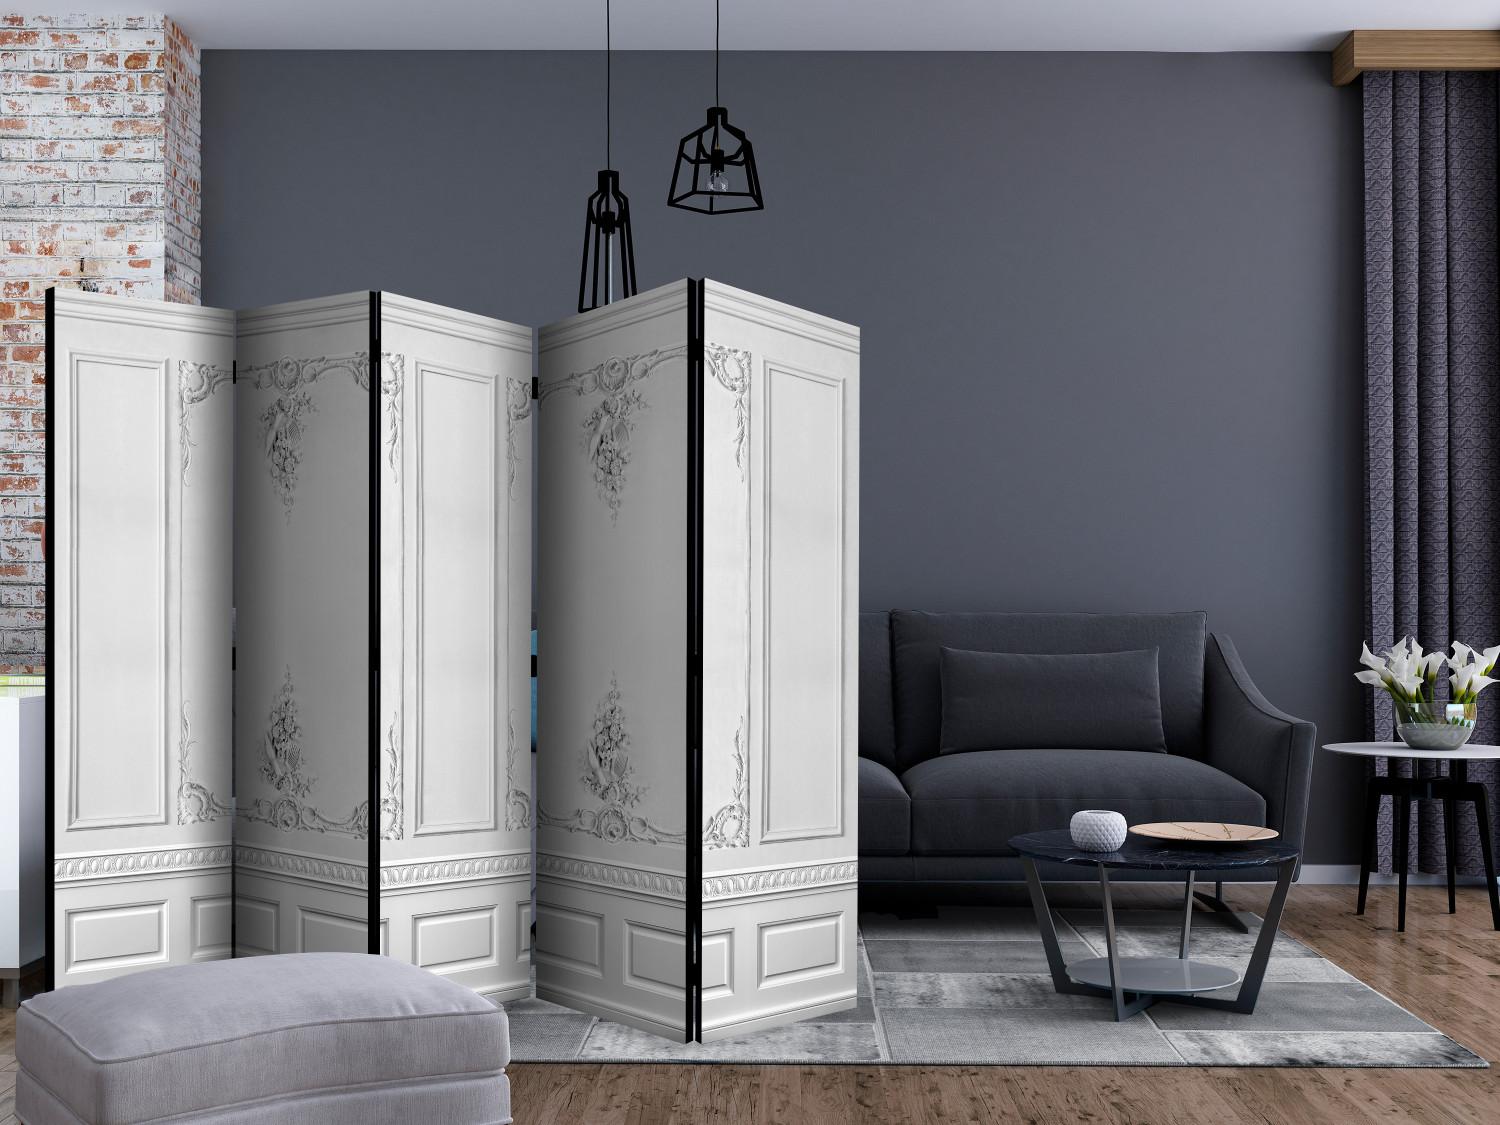 Biombo decorativo Muro del palacio II (5 partes) - elegante fondo gris con adornos